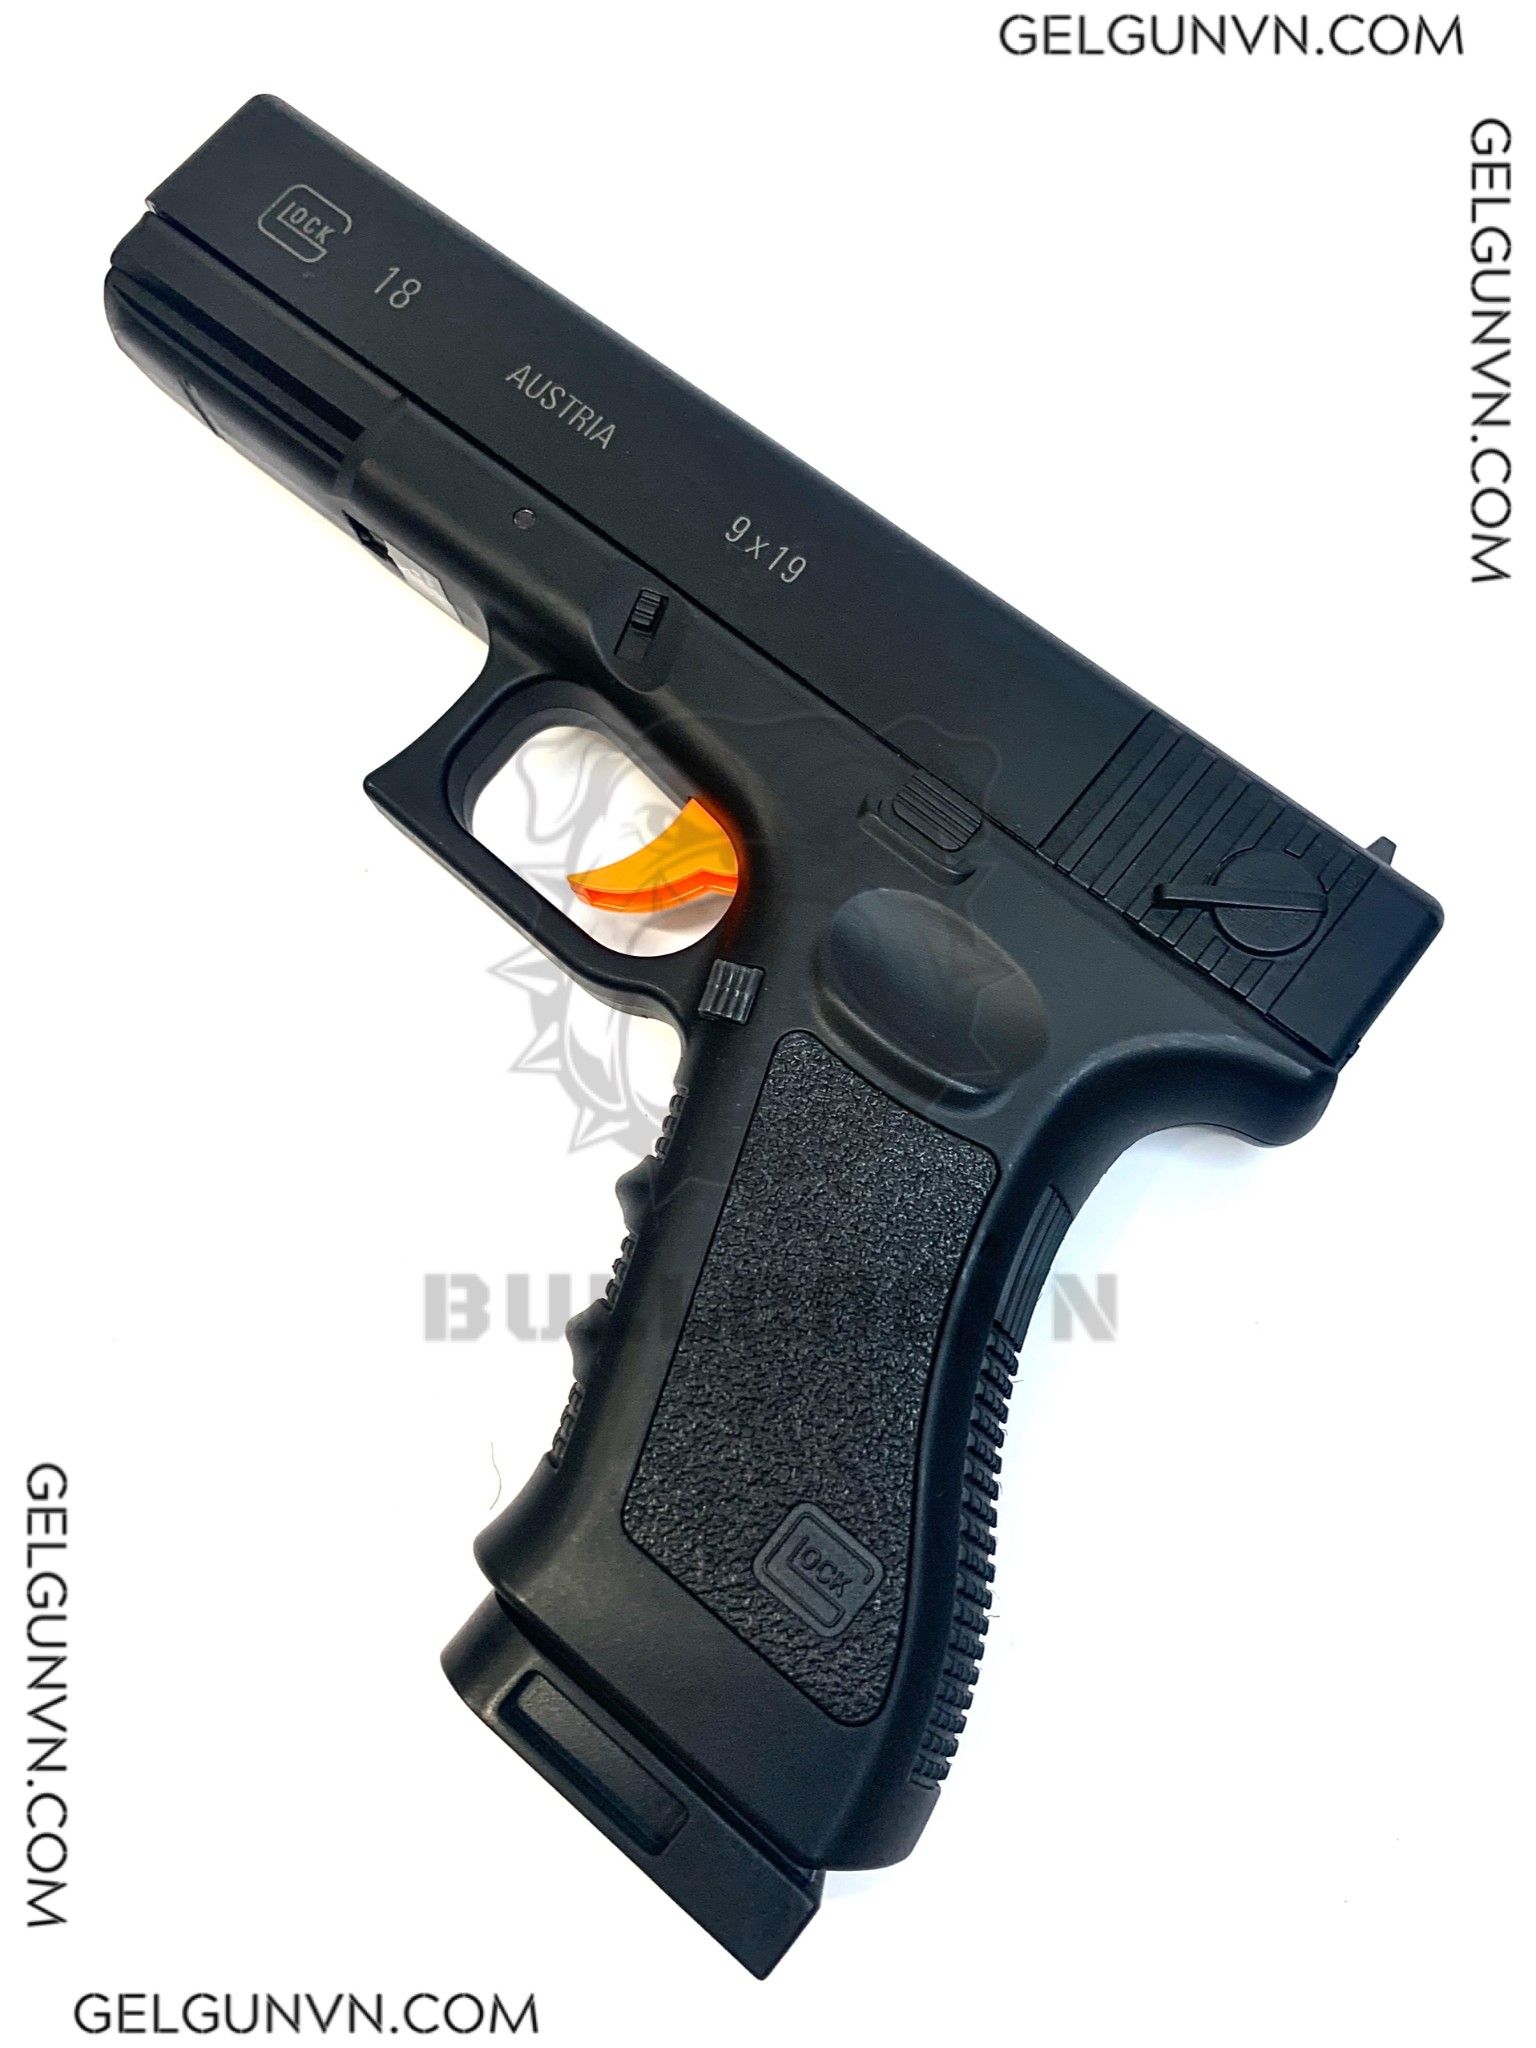  Súng Đạn Thạch Glock 18-V2 - Hàng Có Sẵn 